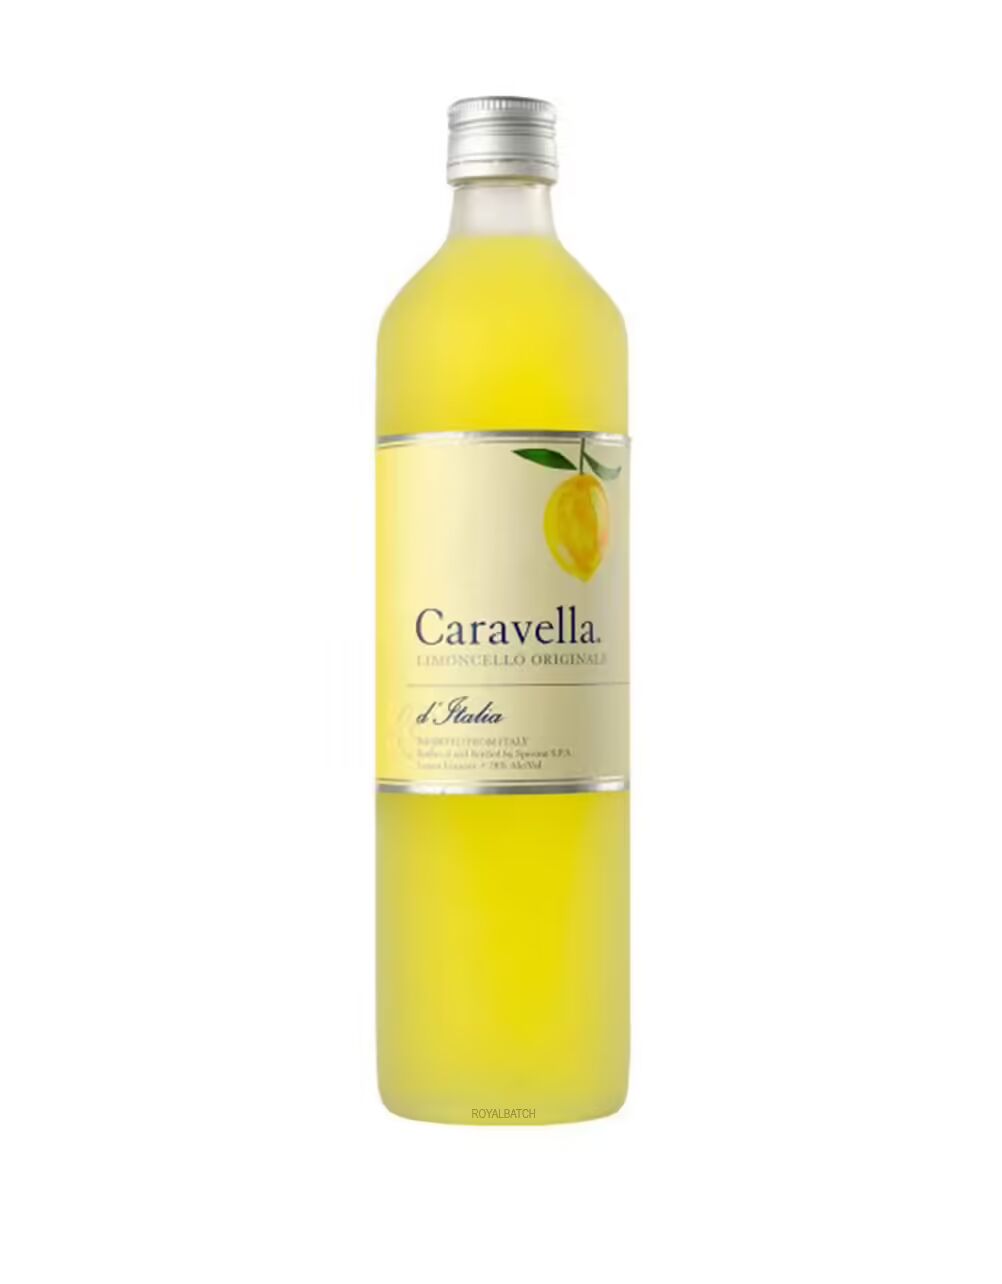 Caravella Limoncello Originale D Italia Liqueur